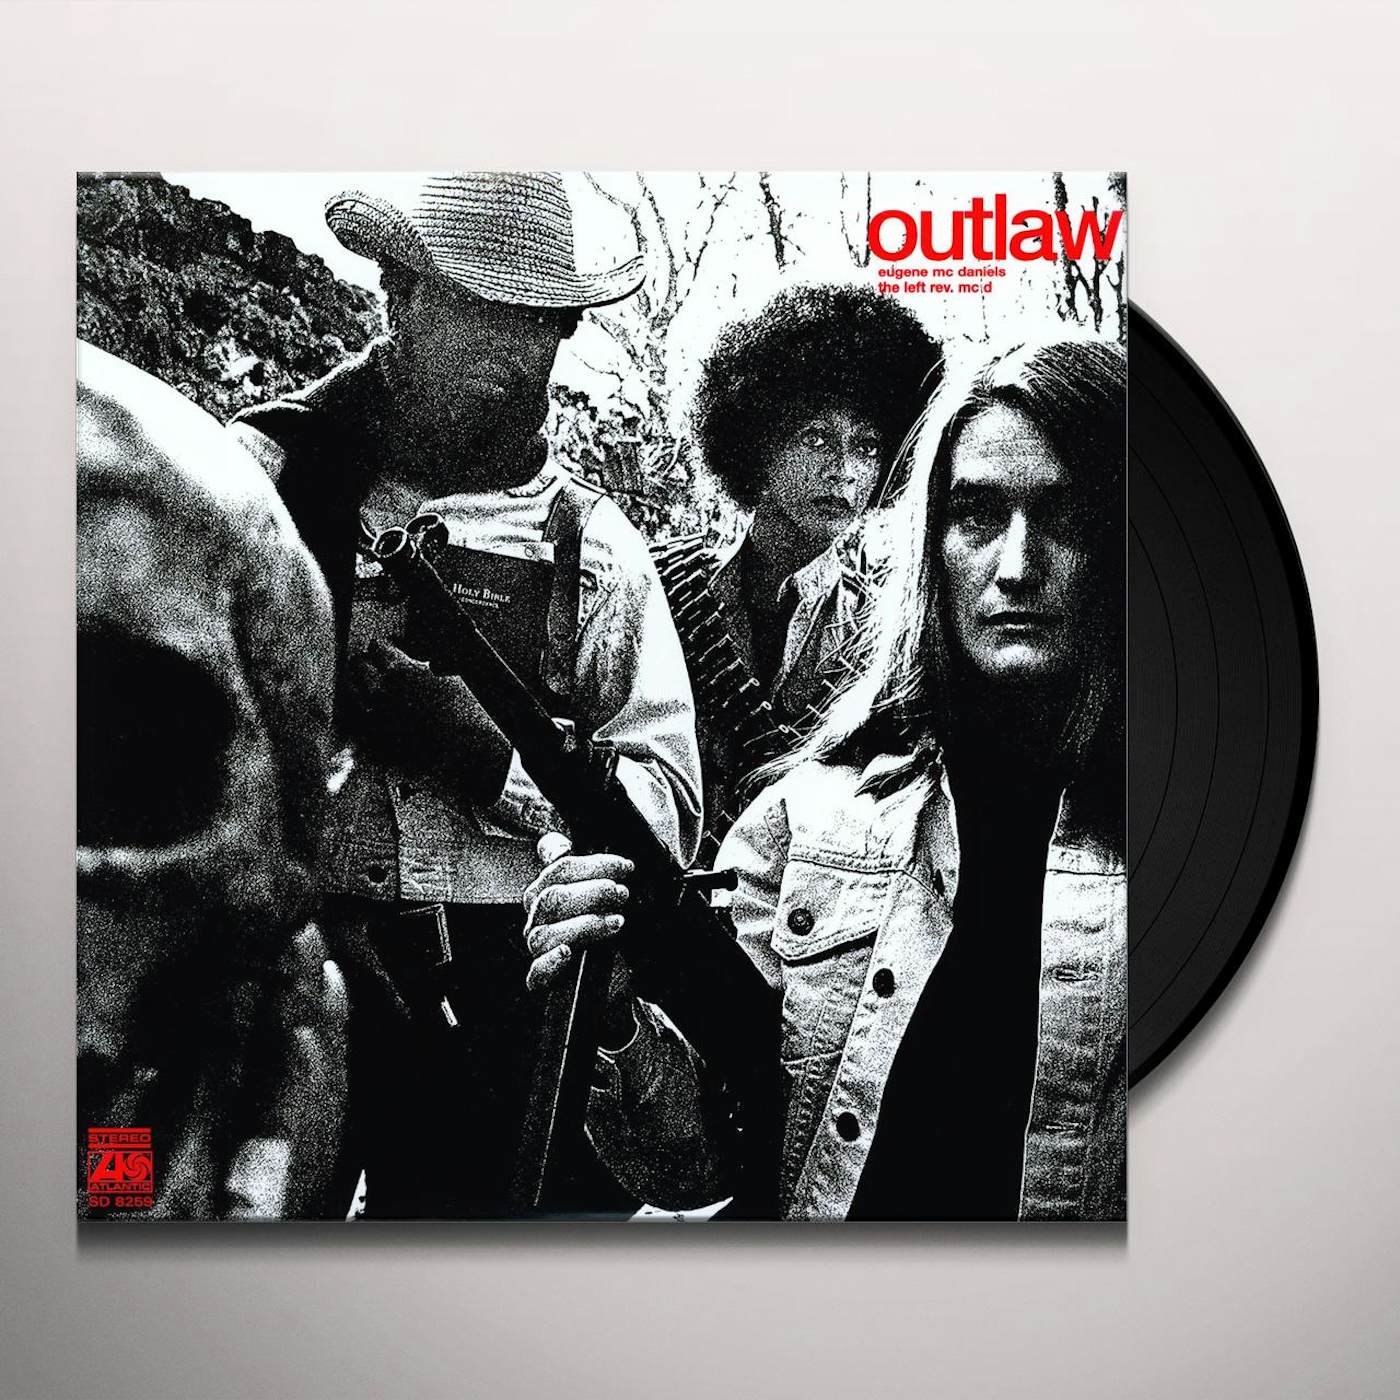 Eugene McDaniels Outlaw Vinyl Record